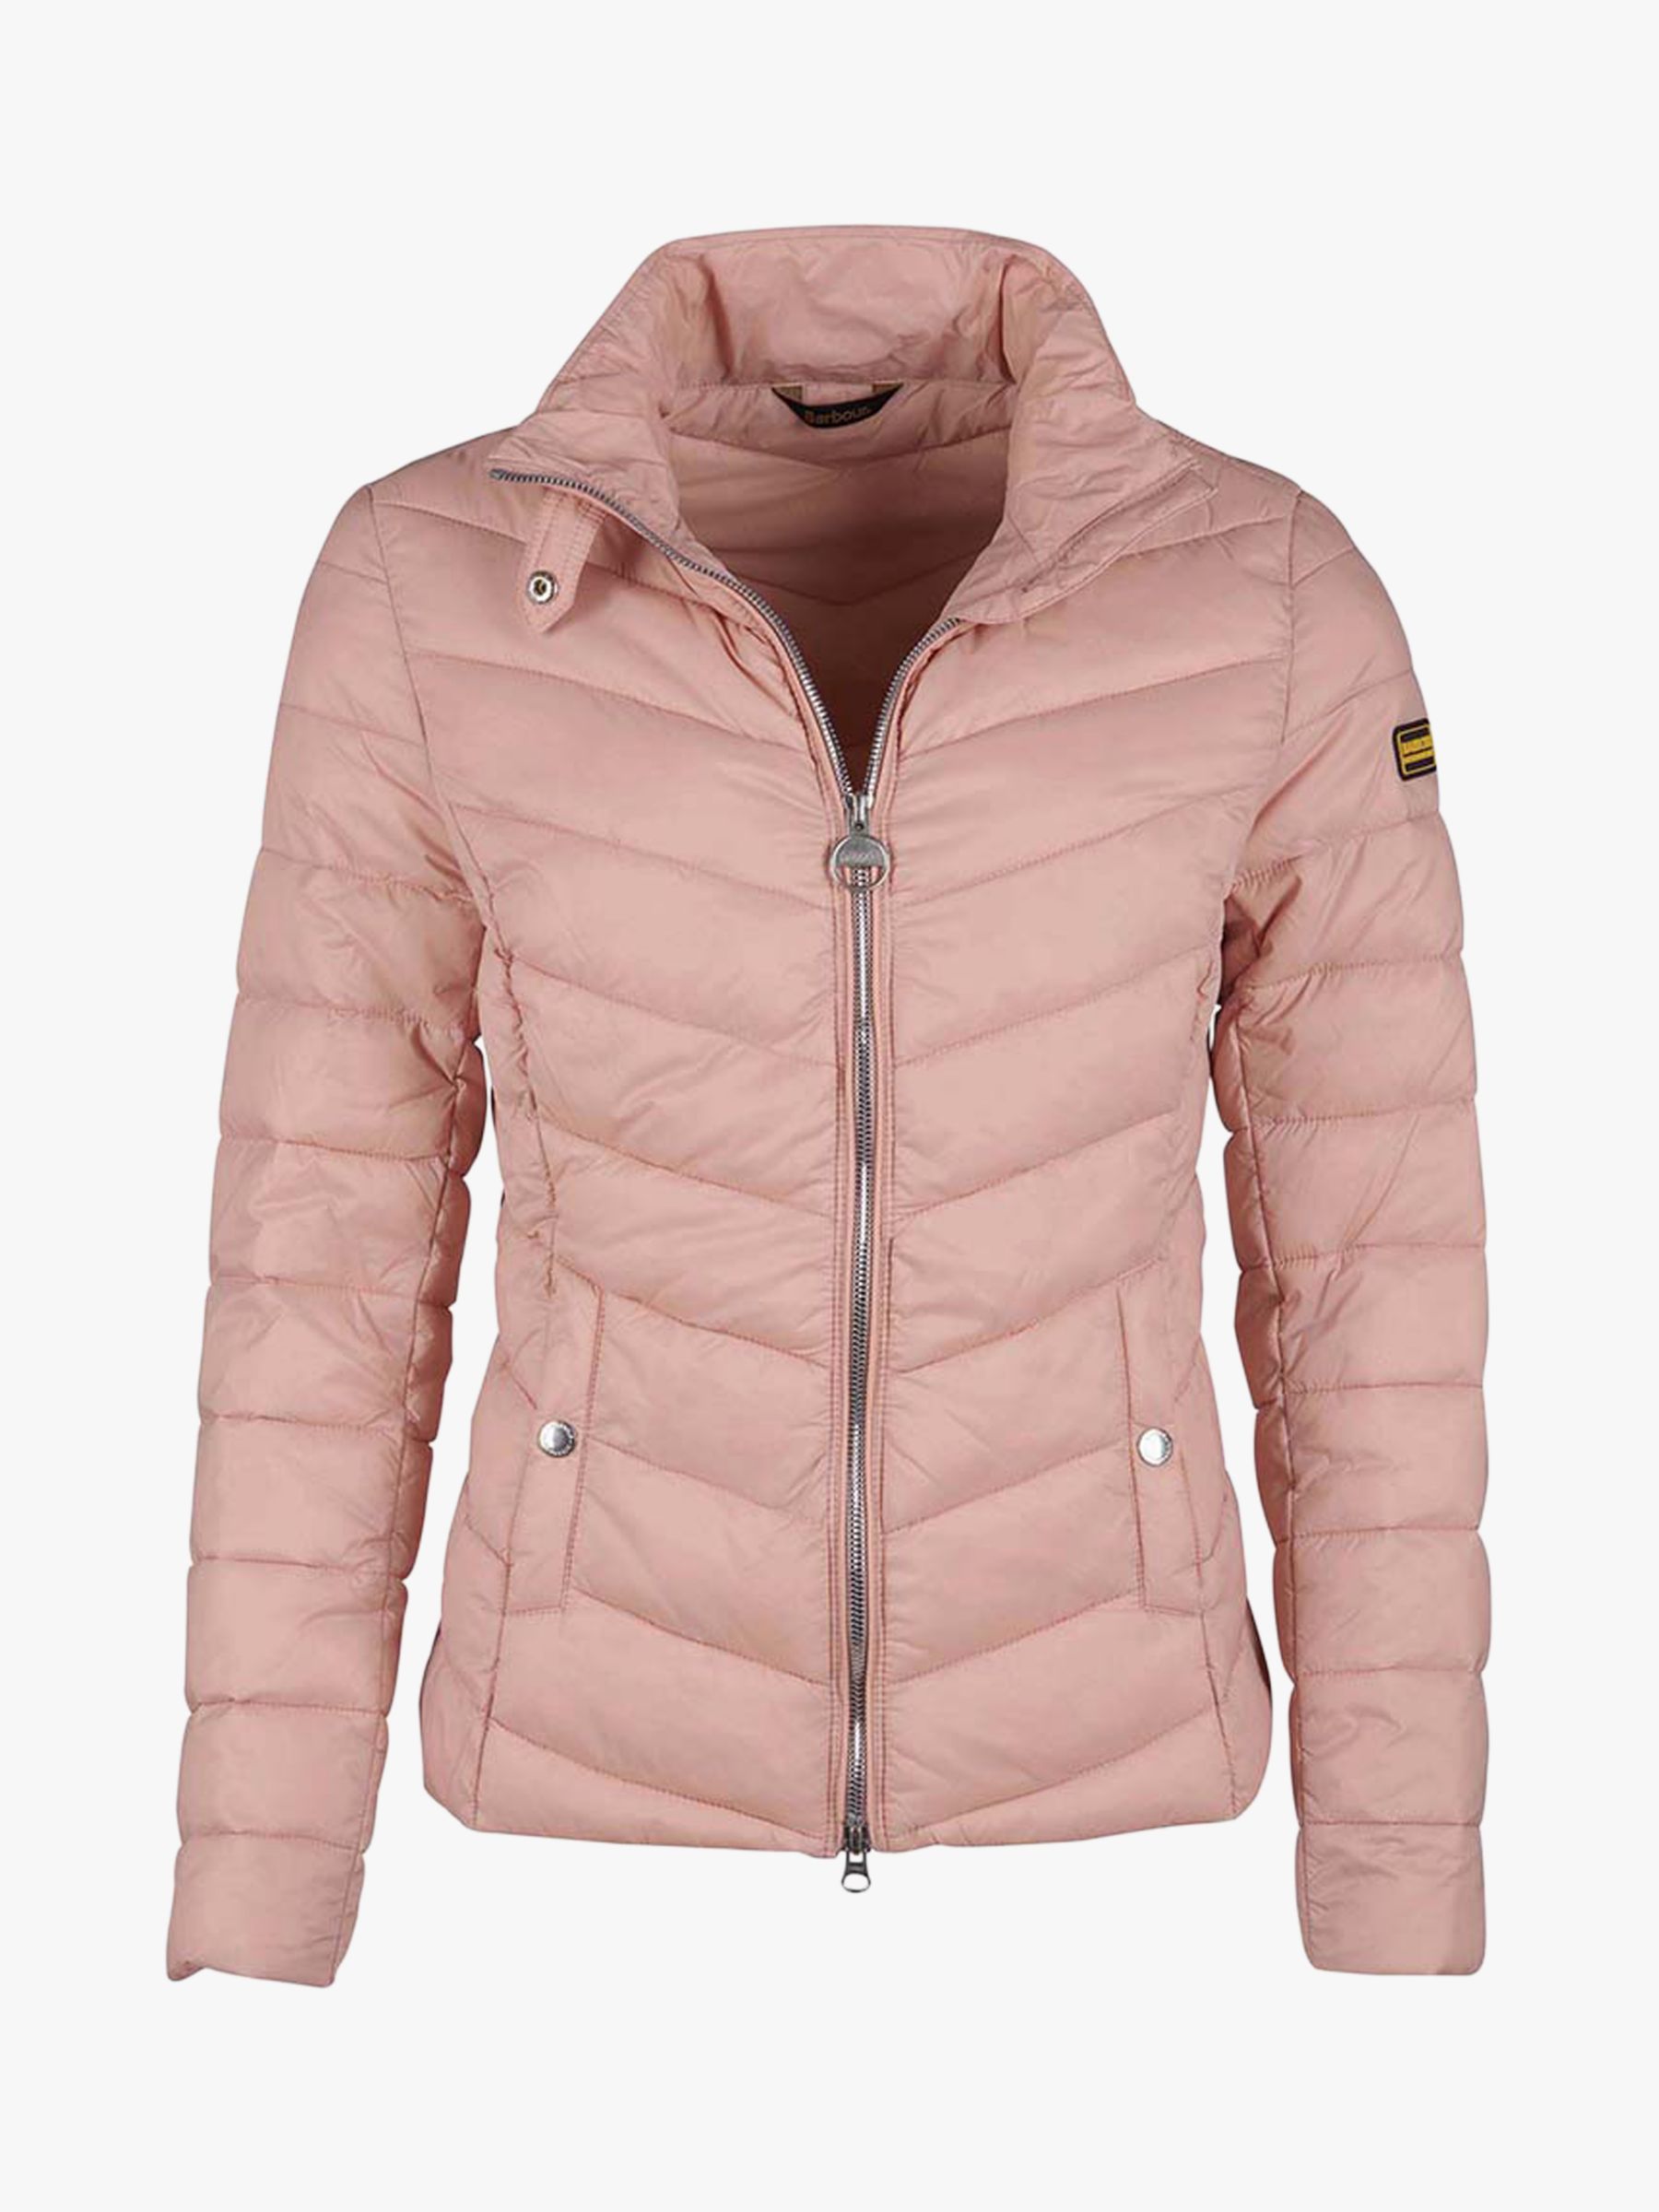 barbour international pink jacket